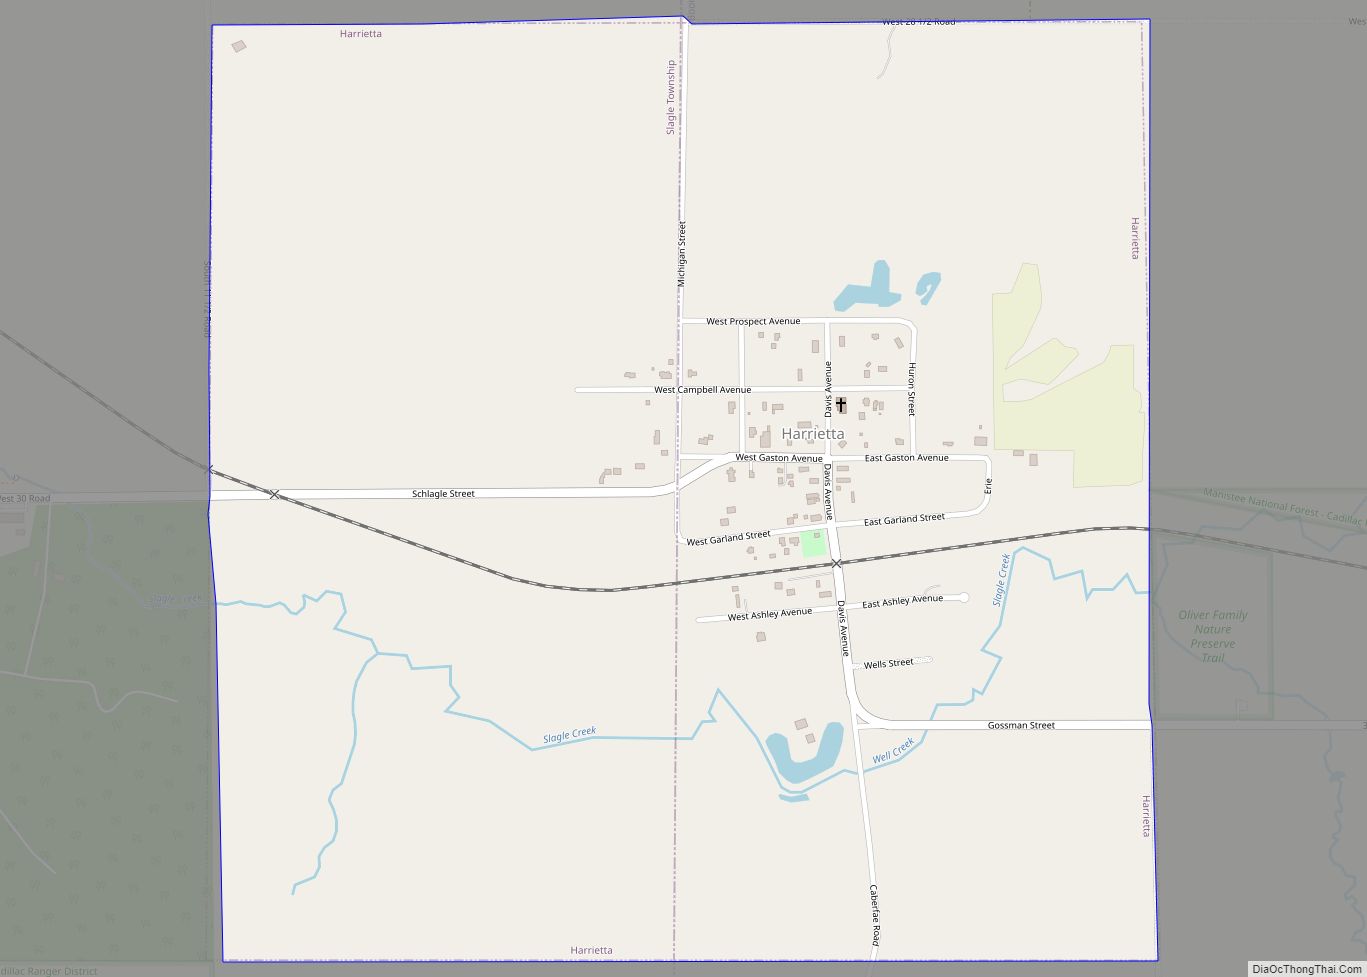 Map of Harrietta village